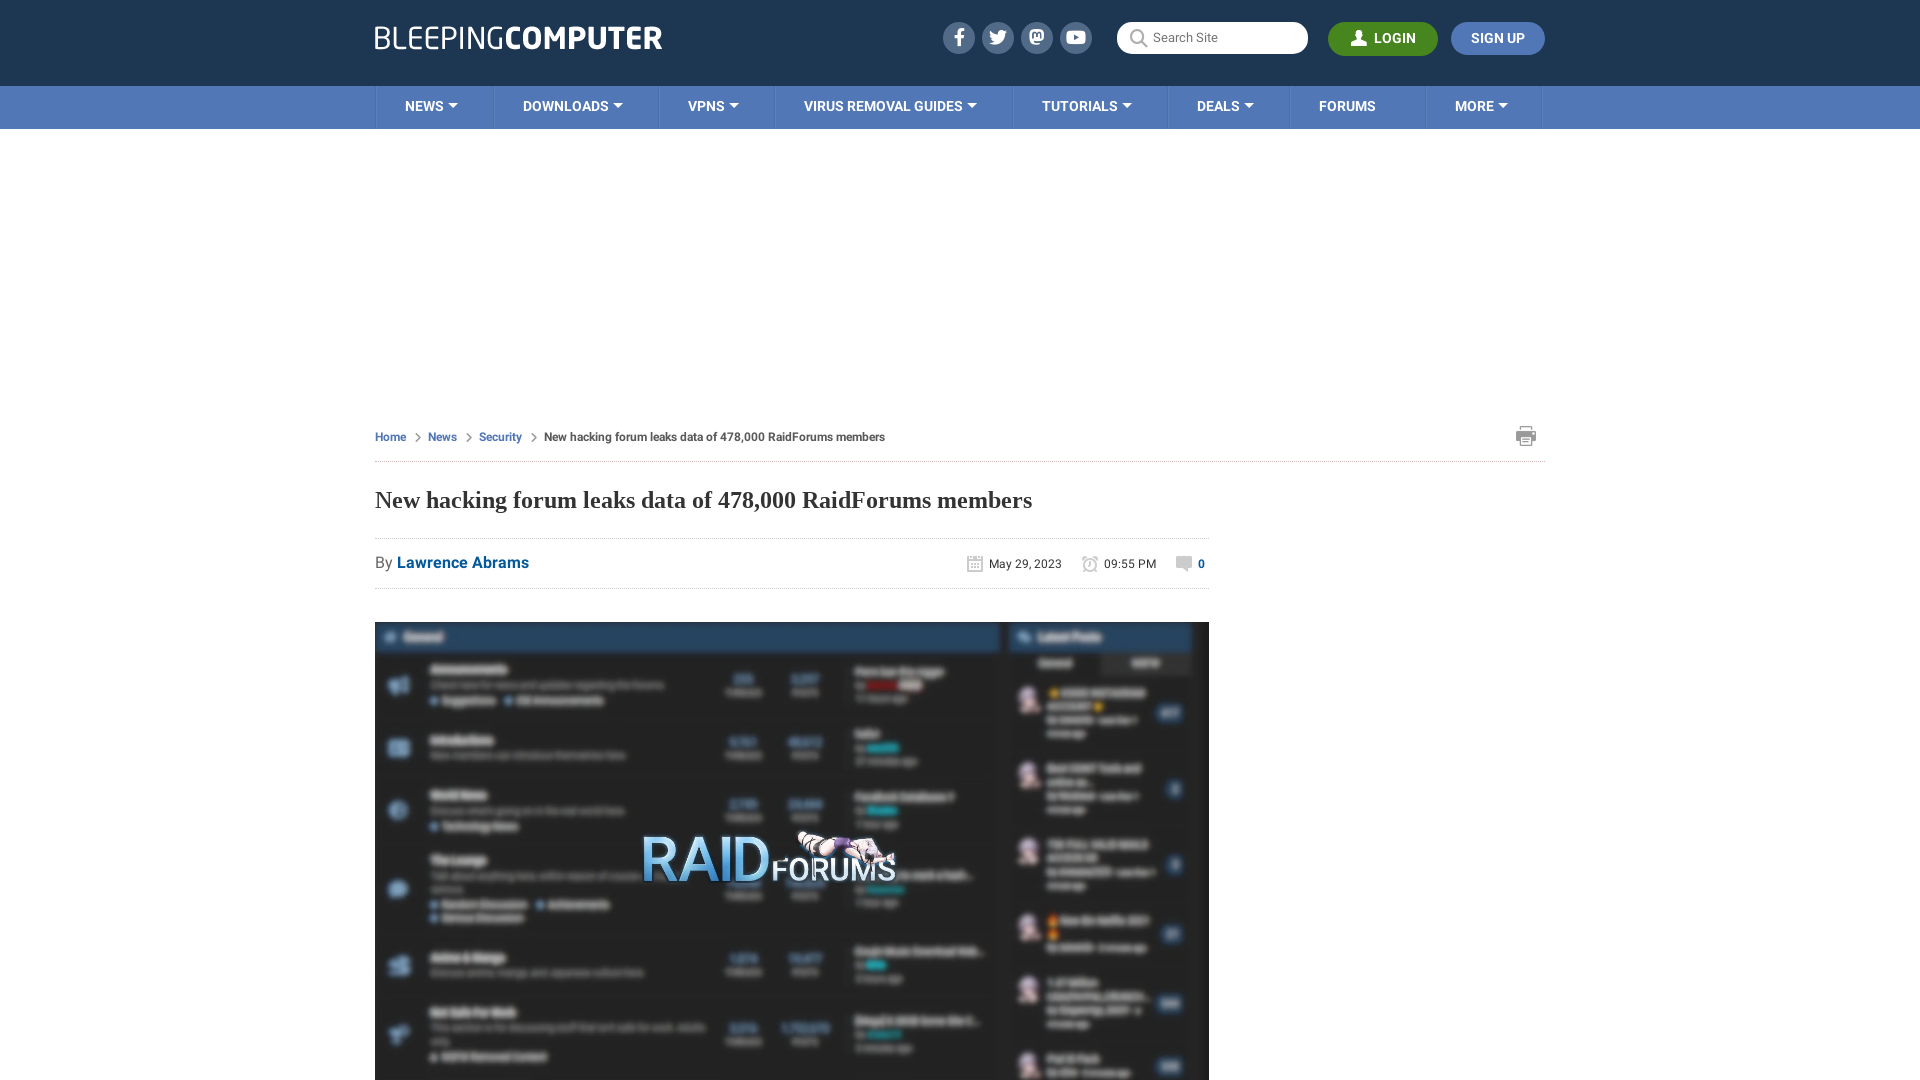 New hacking forum leaks data of 478,000 RaidForums members